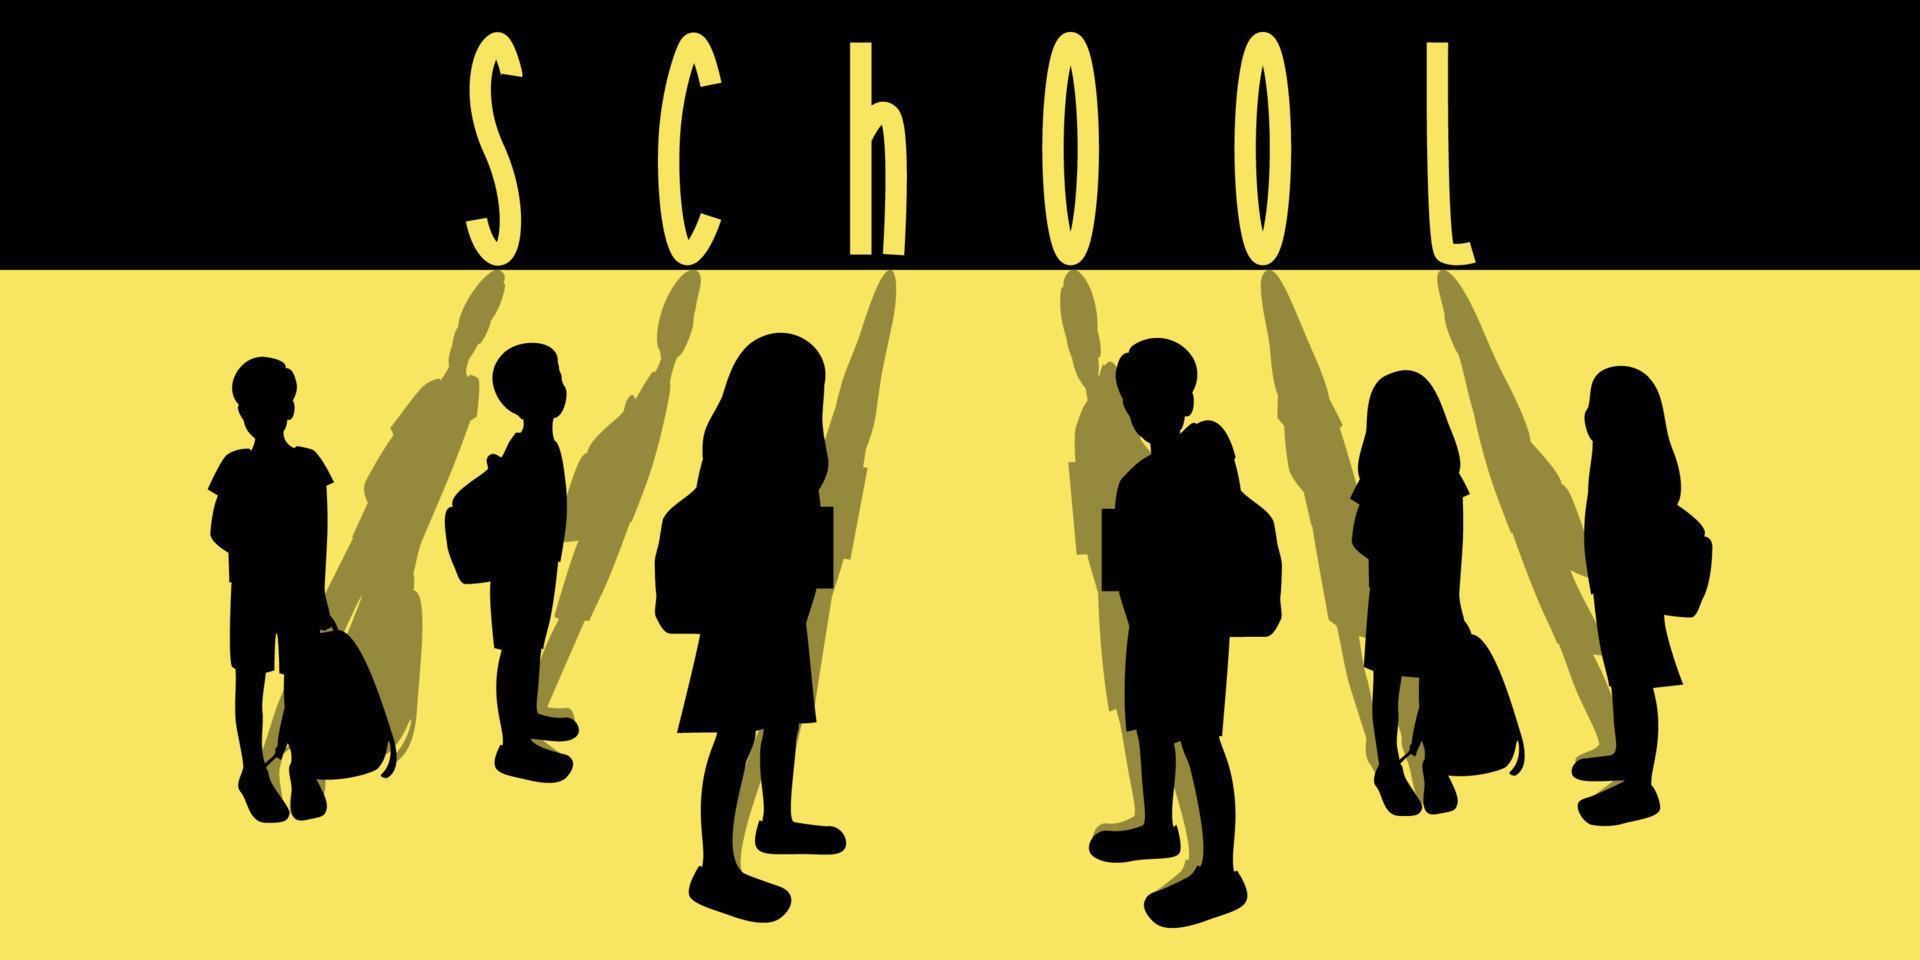 affisch eller banner koncept av skolbarn silhuetter med skuggor, elever med ryggsäckar, bakgrundstext skola svart och gul vektorillustration vektor